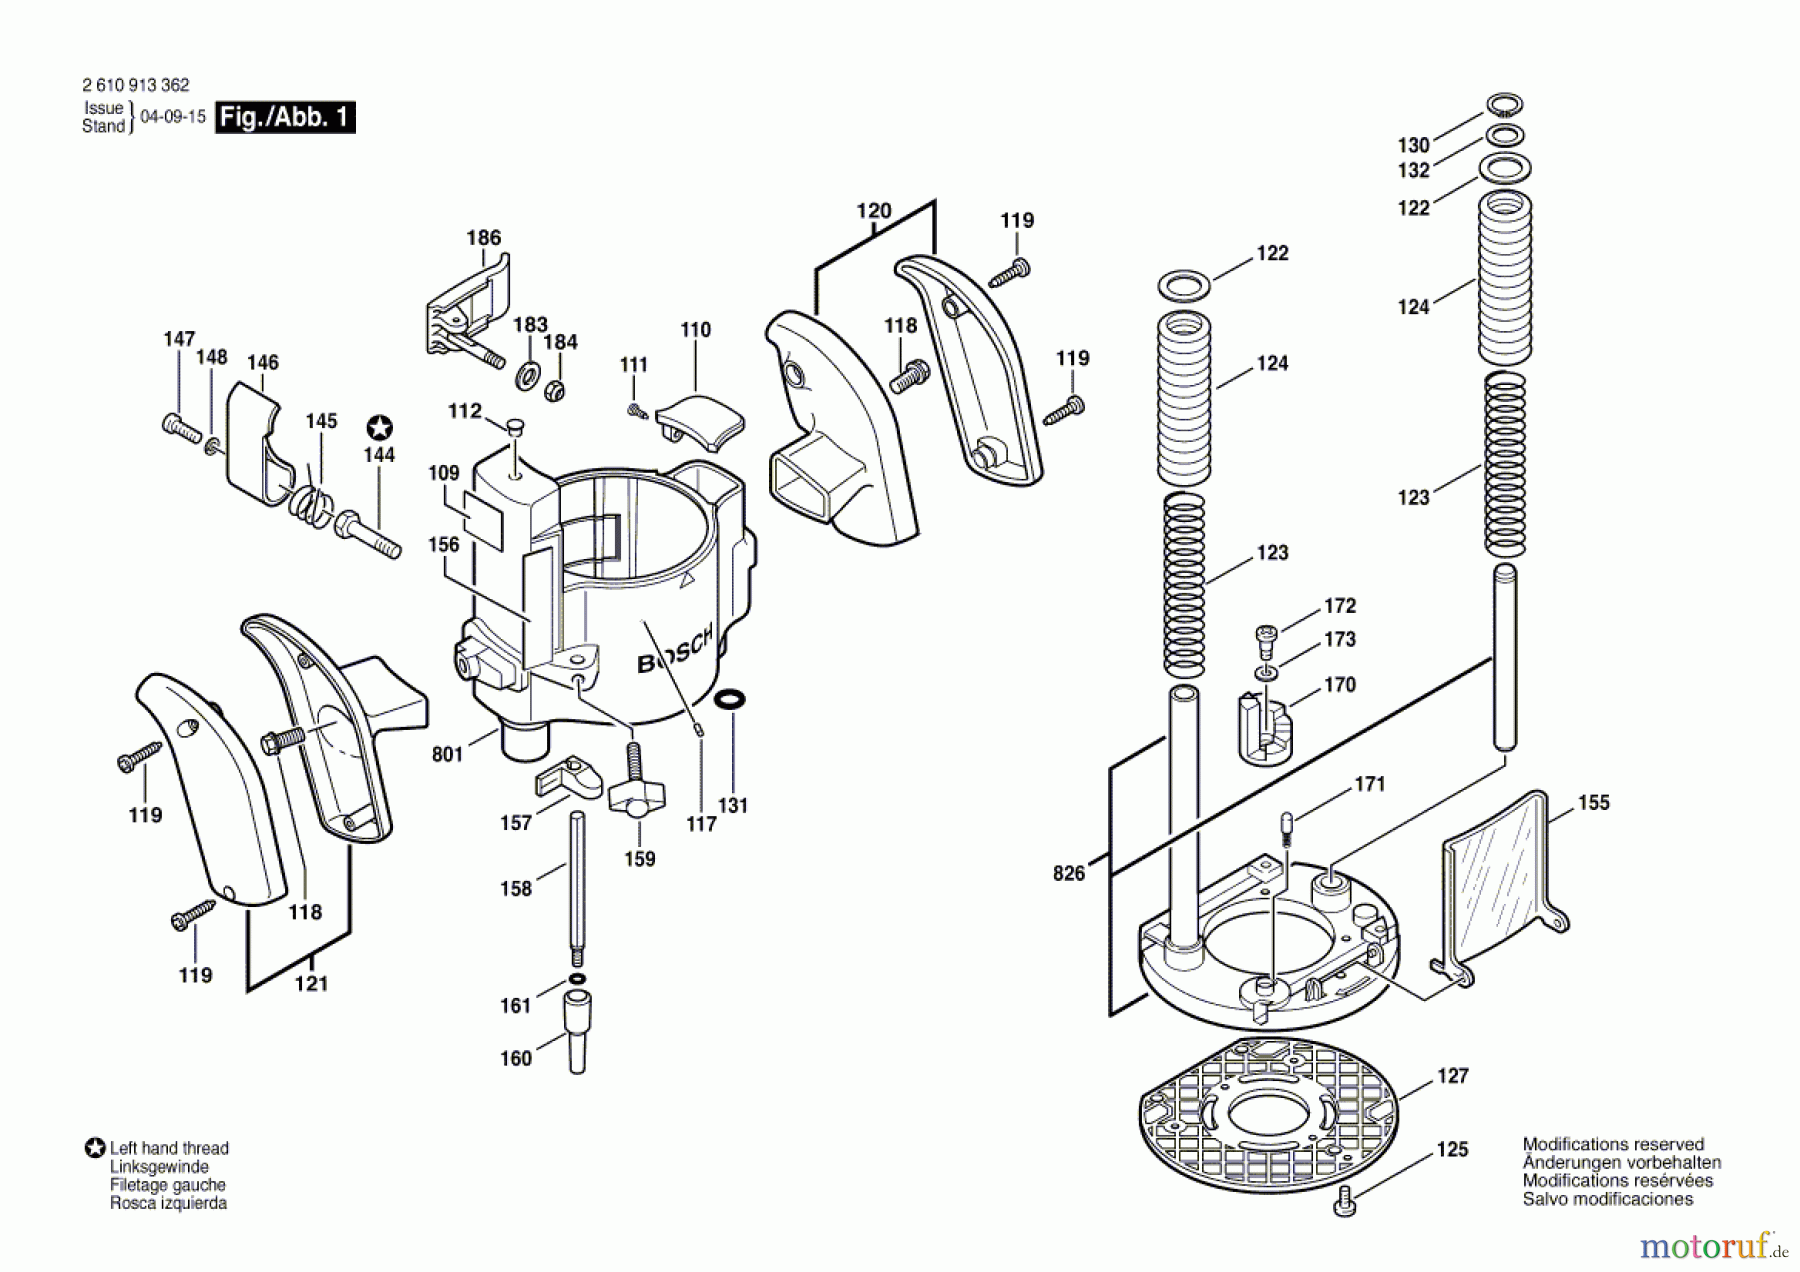  Bosch Werkzeug Oberfräse RA1166 Seite 1